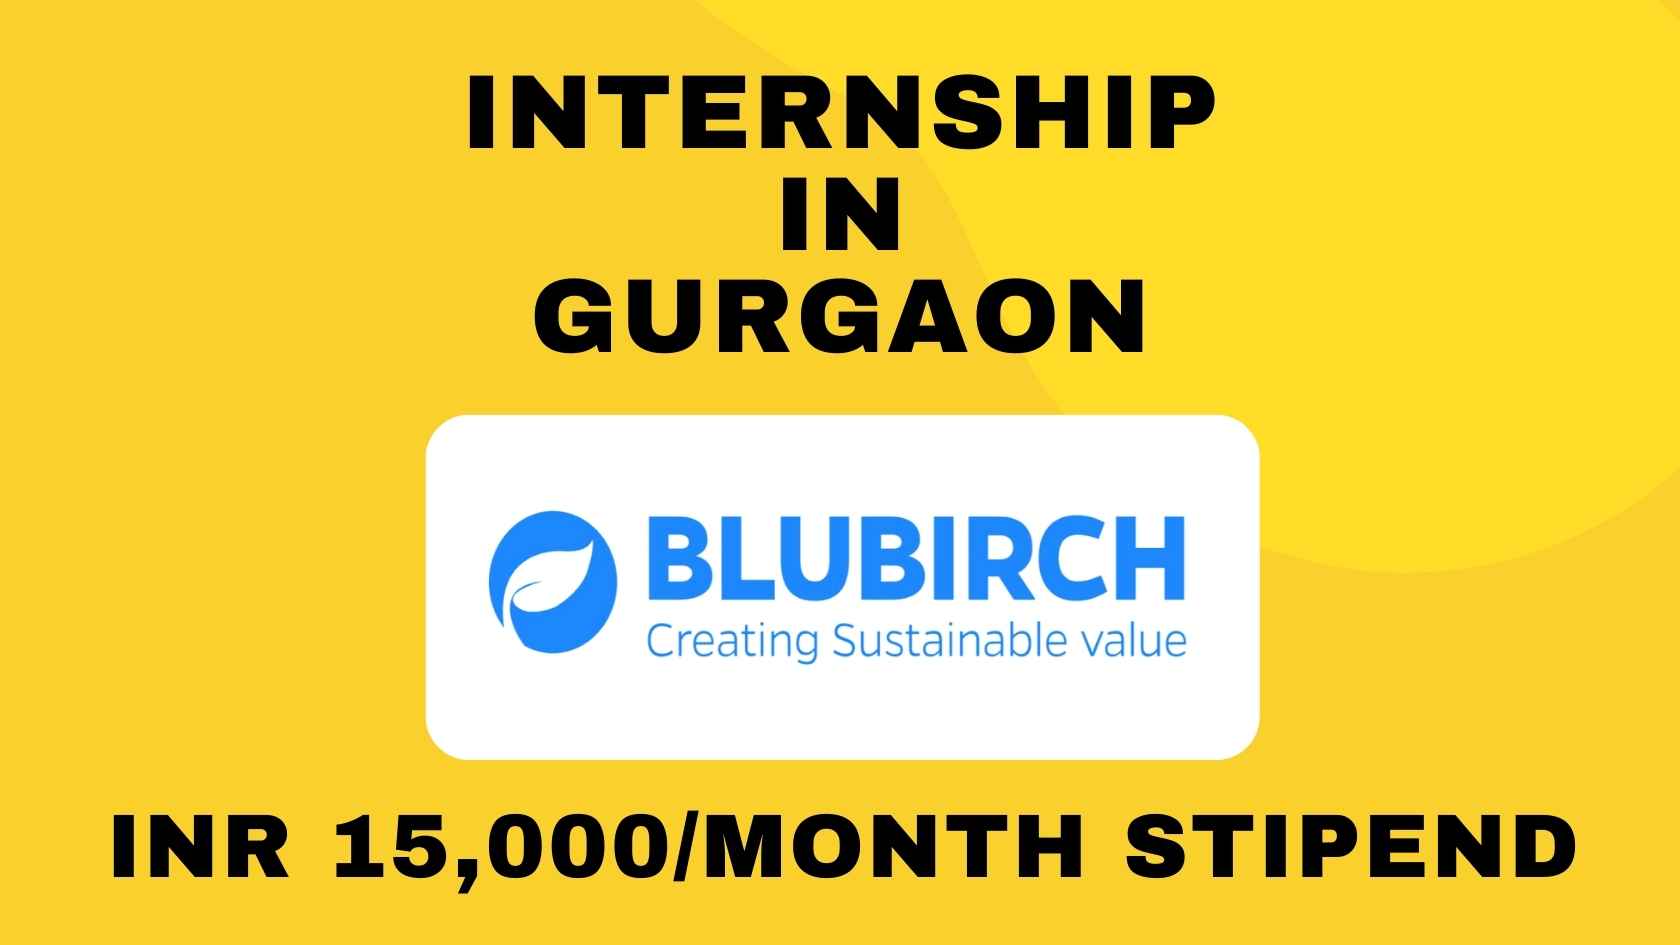 Blubirch Internship in Gurgaon